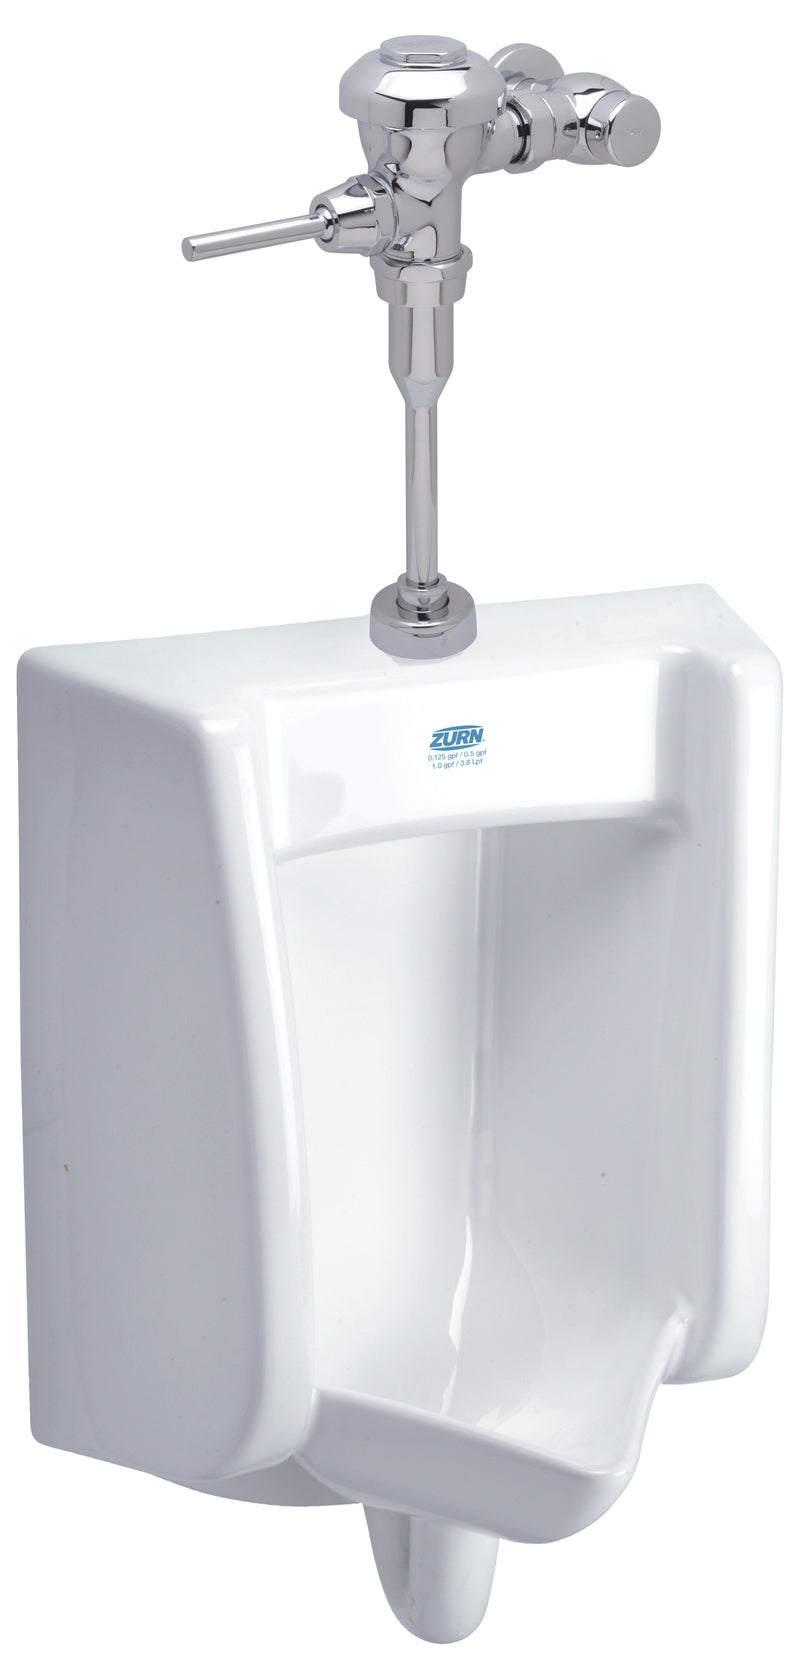 Zurn Z.UR2.M Zurn One Manual Urinal System with 0.5 GPF Flush Valve